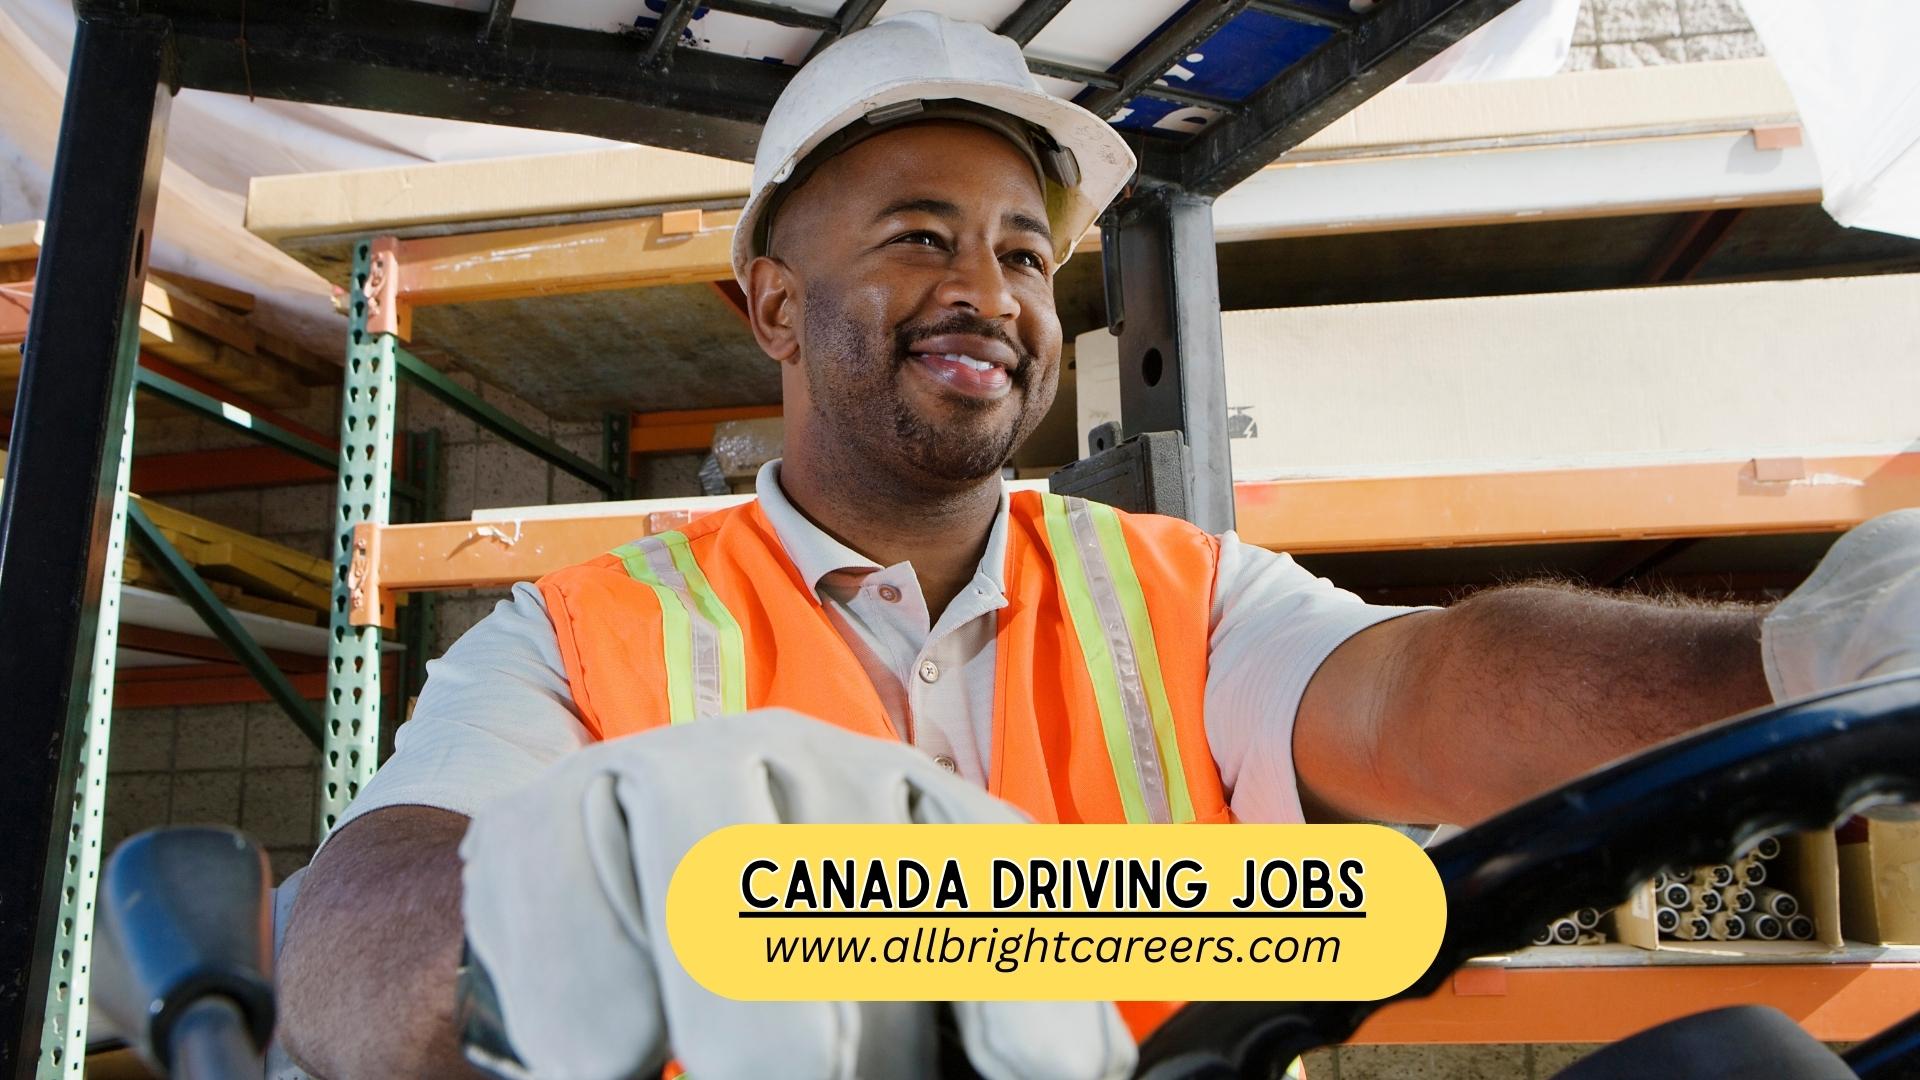 Canada Driving Jobs